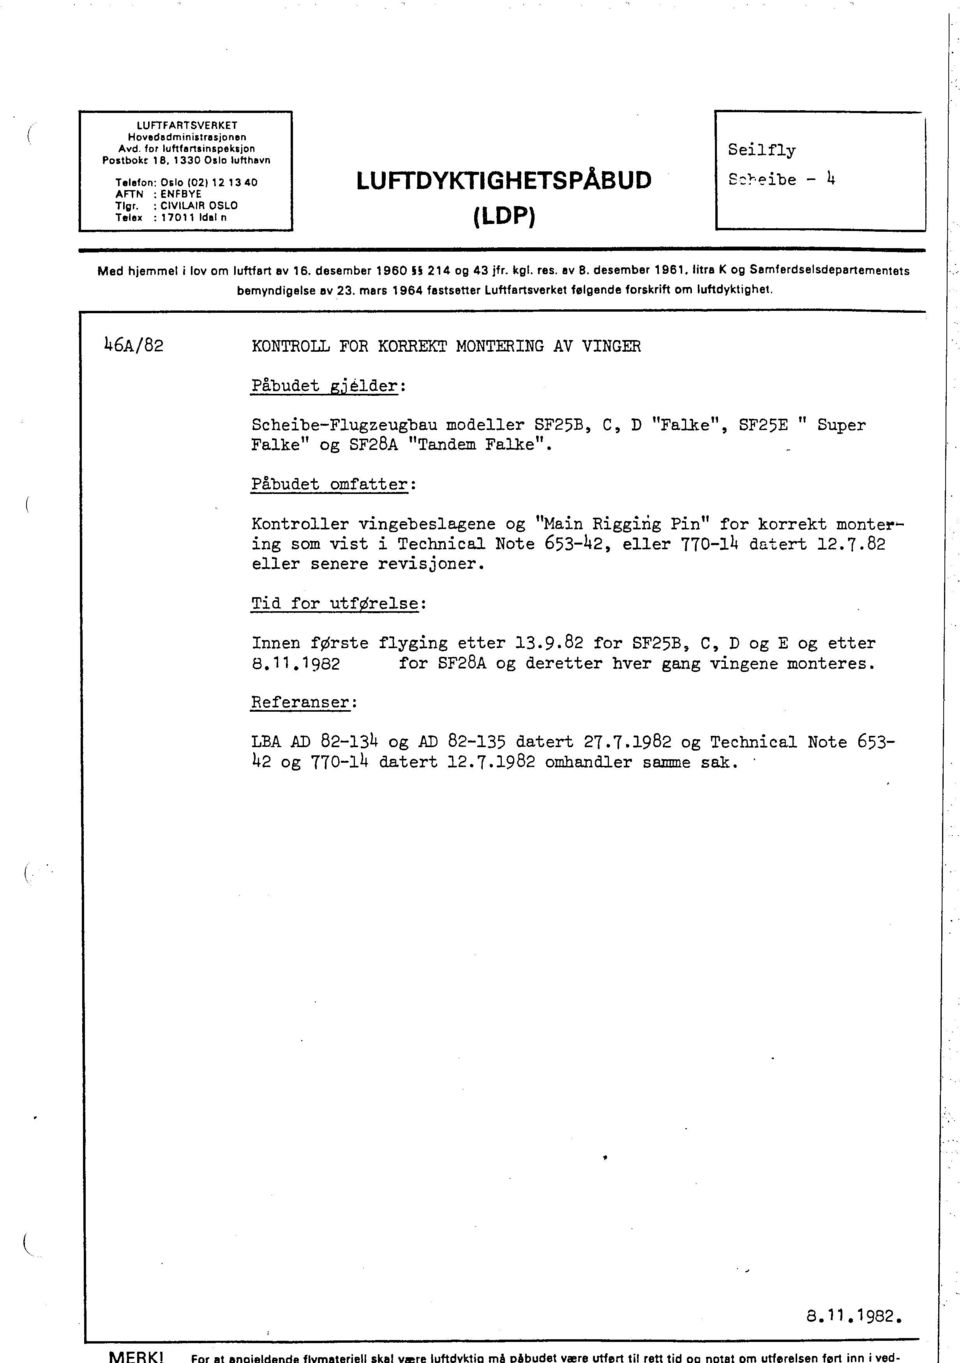 litra K og Samferdselsdepartementets bemyndigelse av 23. mars 1964 fastsetter Luftfartsverket følgende forskrift om luftdyktighel.